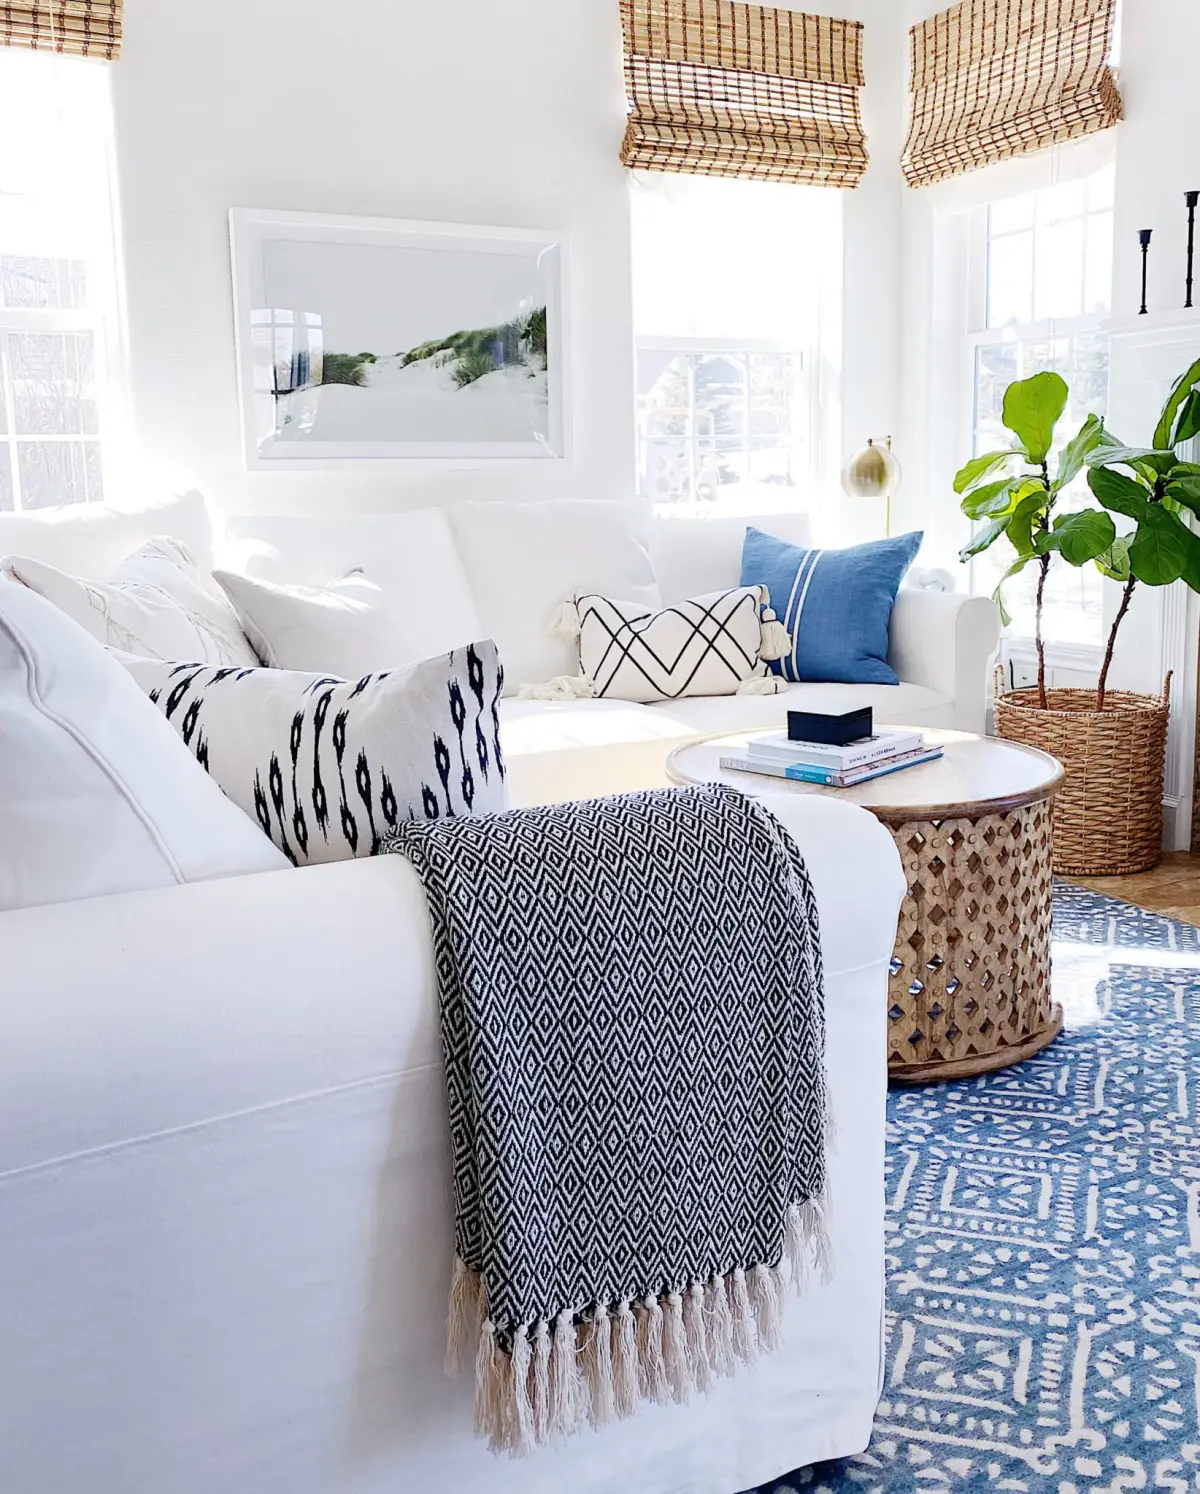 kleine ferienwohnung einrichten wohnzimmer in bungalow am meer einrichten weisse moebel niedrige kaffeetische aus holz retro teppich in blau weiss